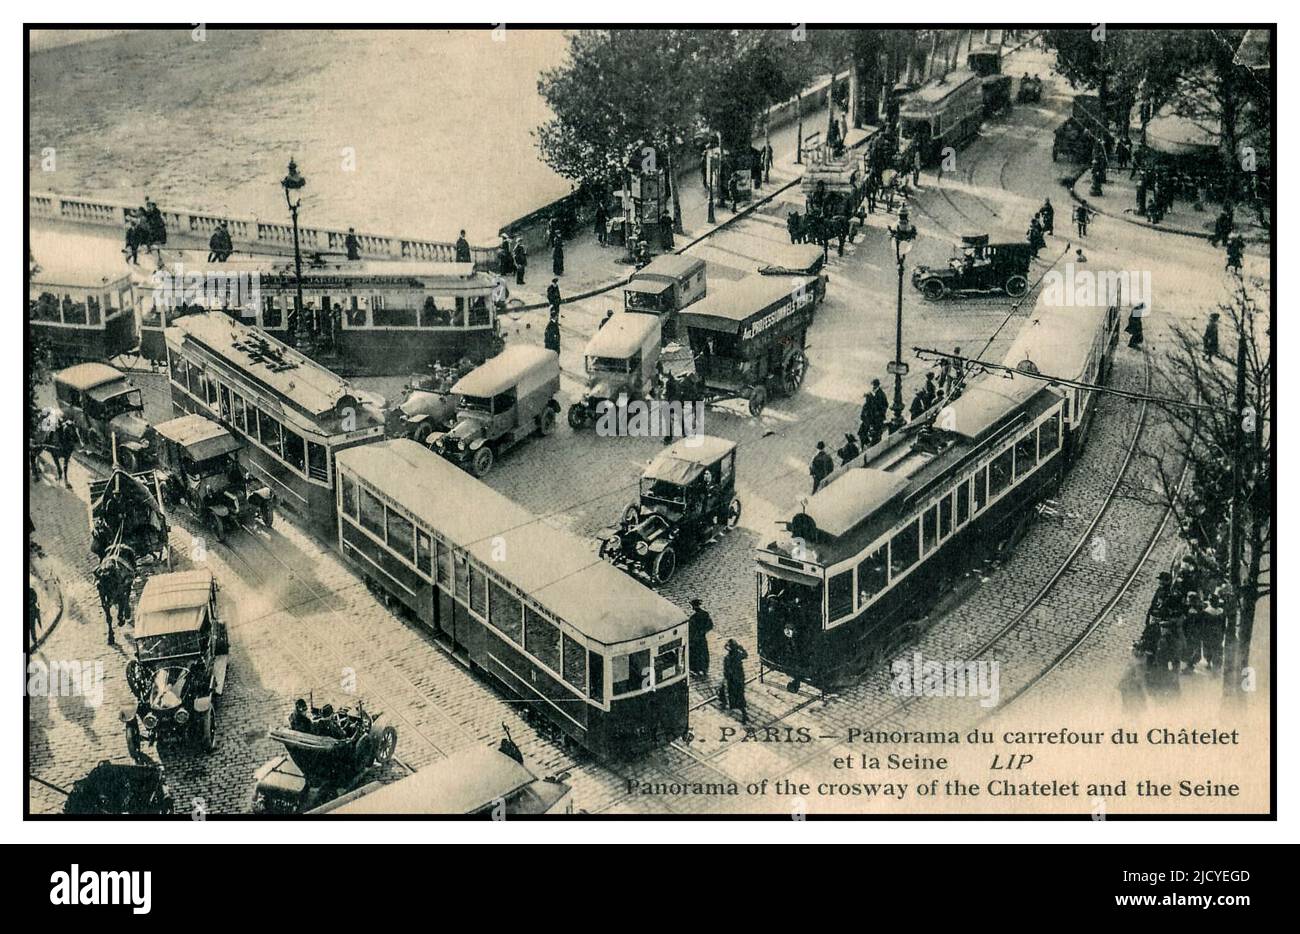 Vintage Paris Traffic Postkarte mit einem Stau von Pferdefahrzeugen gemischt mit Autos, Straßenbahnen und Fußgängern. Panorama-Übersicht über den Kreuzweg des Place du Chatelet und die seine Paris Frankreich Stockfoto